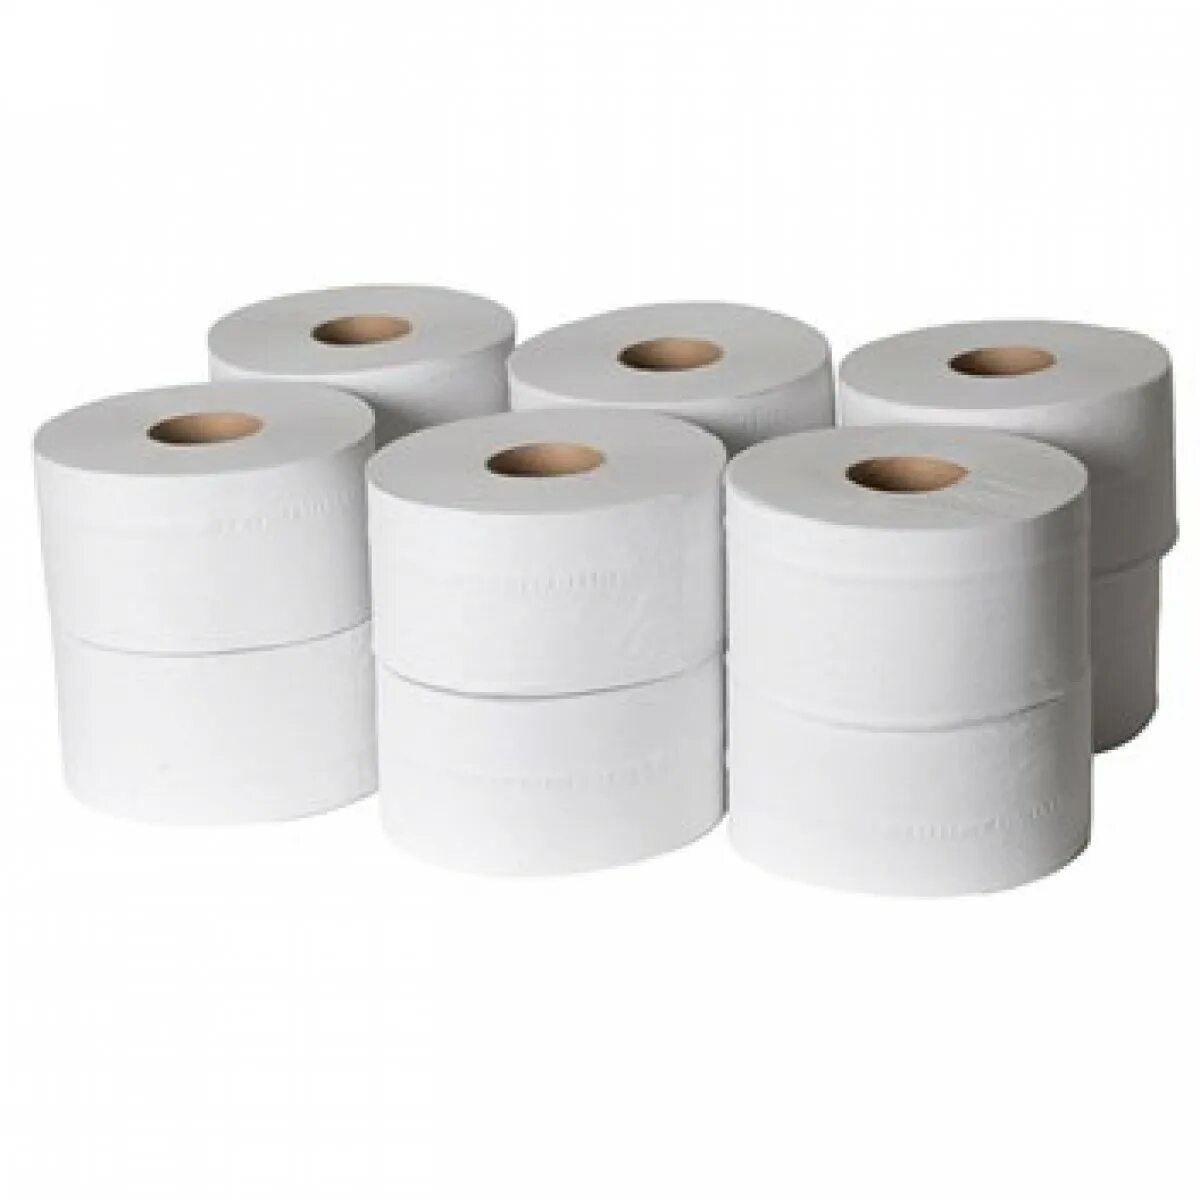 200 рулонов туалетной бумаги